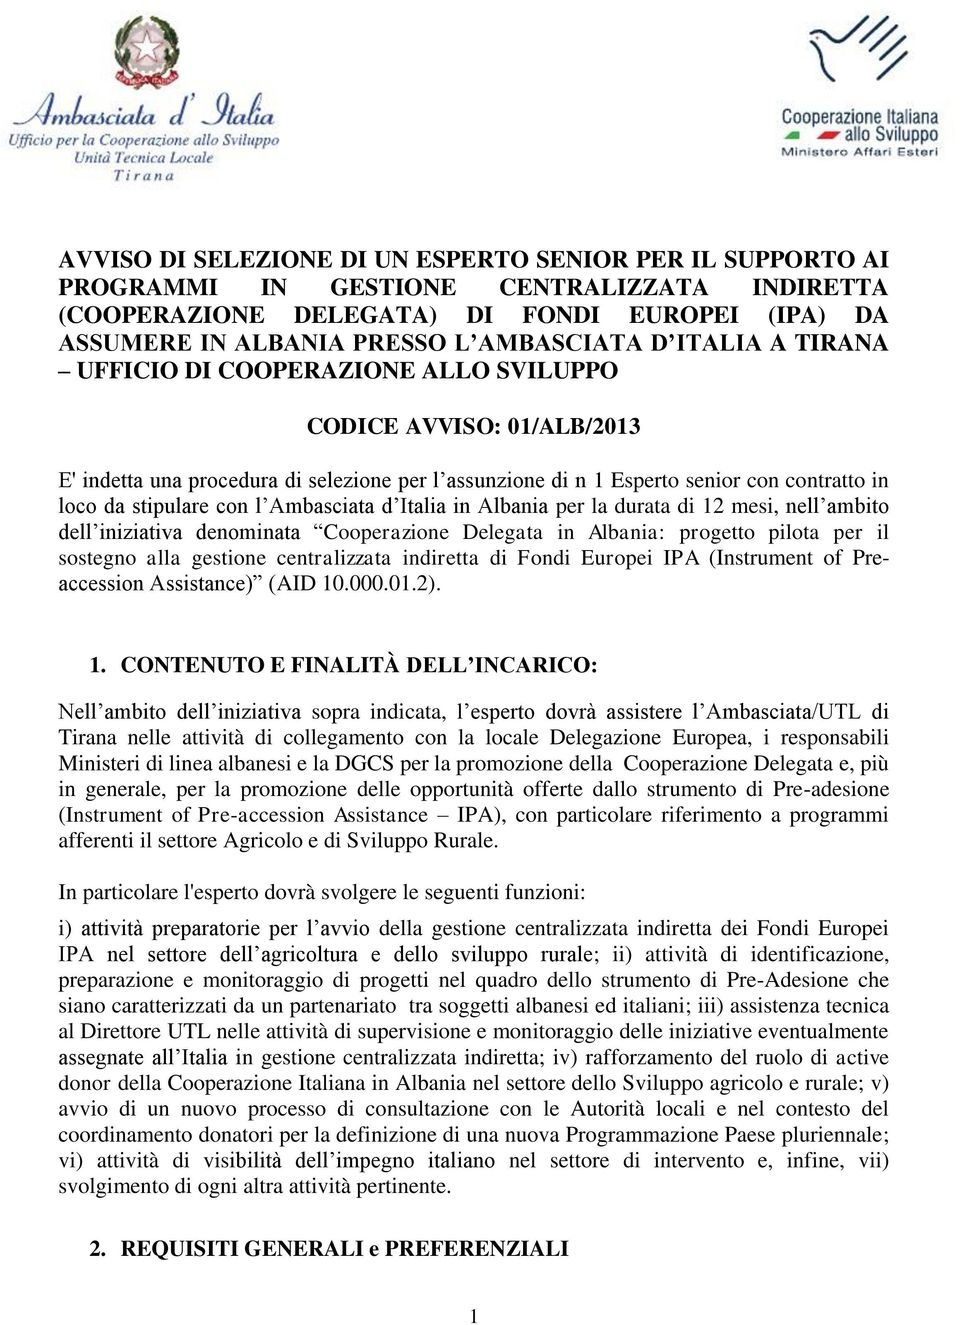 Ambasciata d Italia in Albania per la durata di 12 mesi, nell ambito dell iniziativa denominata Cooperazione Delegata in Albania: progetto pilota per il sostegno alla gestione centralizzata indiretta